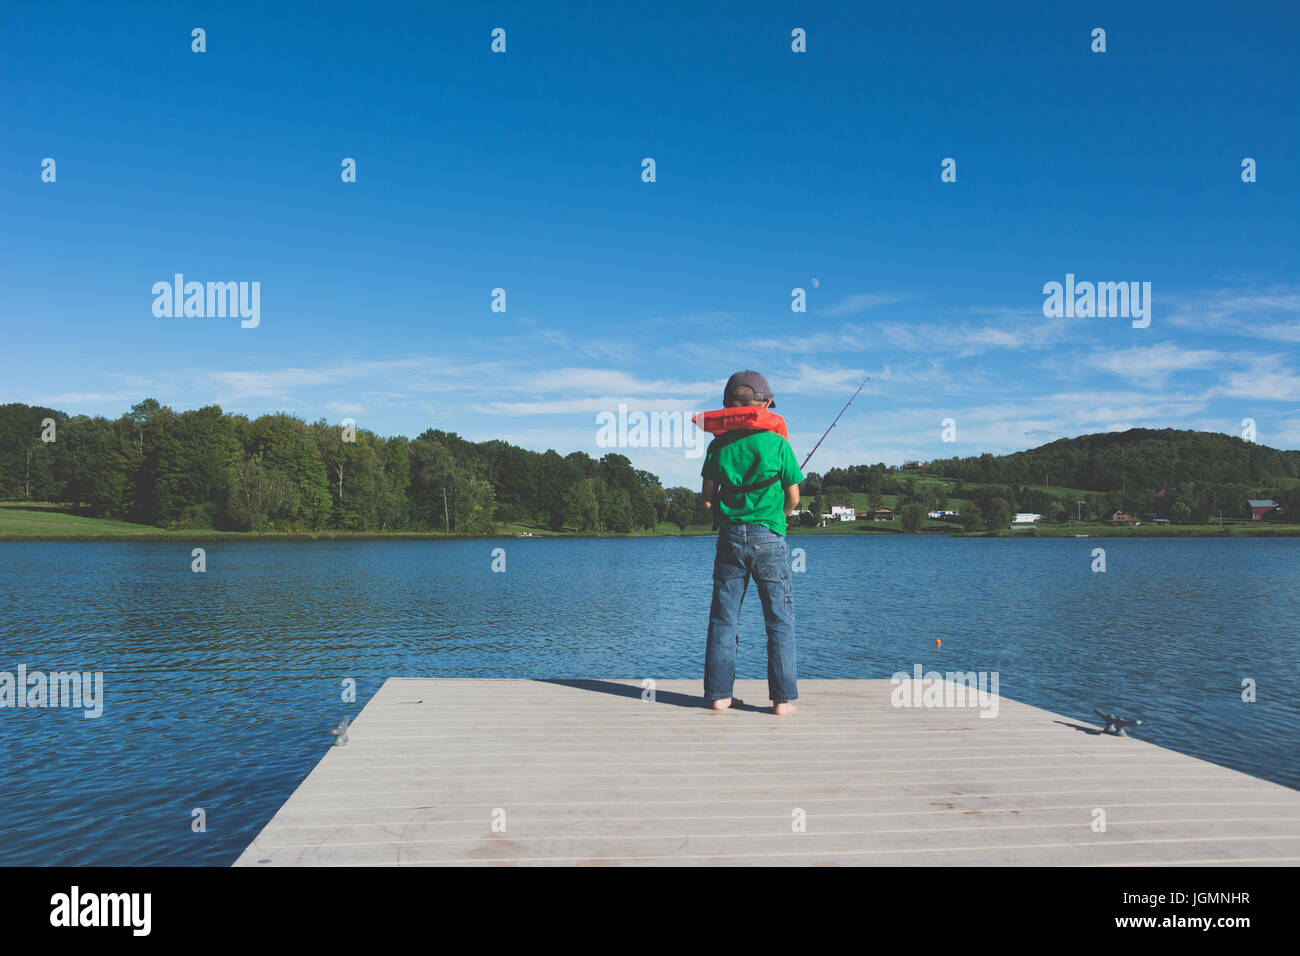 Un bambino la pesca su un dock presso uno stagno in una zona rurale. Foto Stock